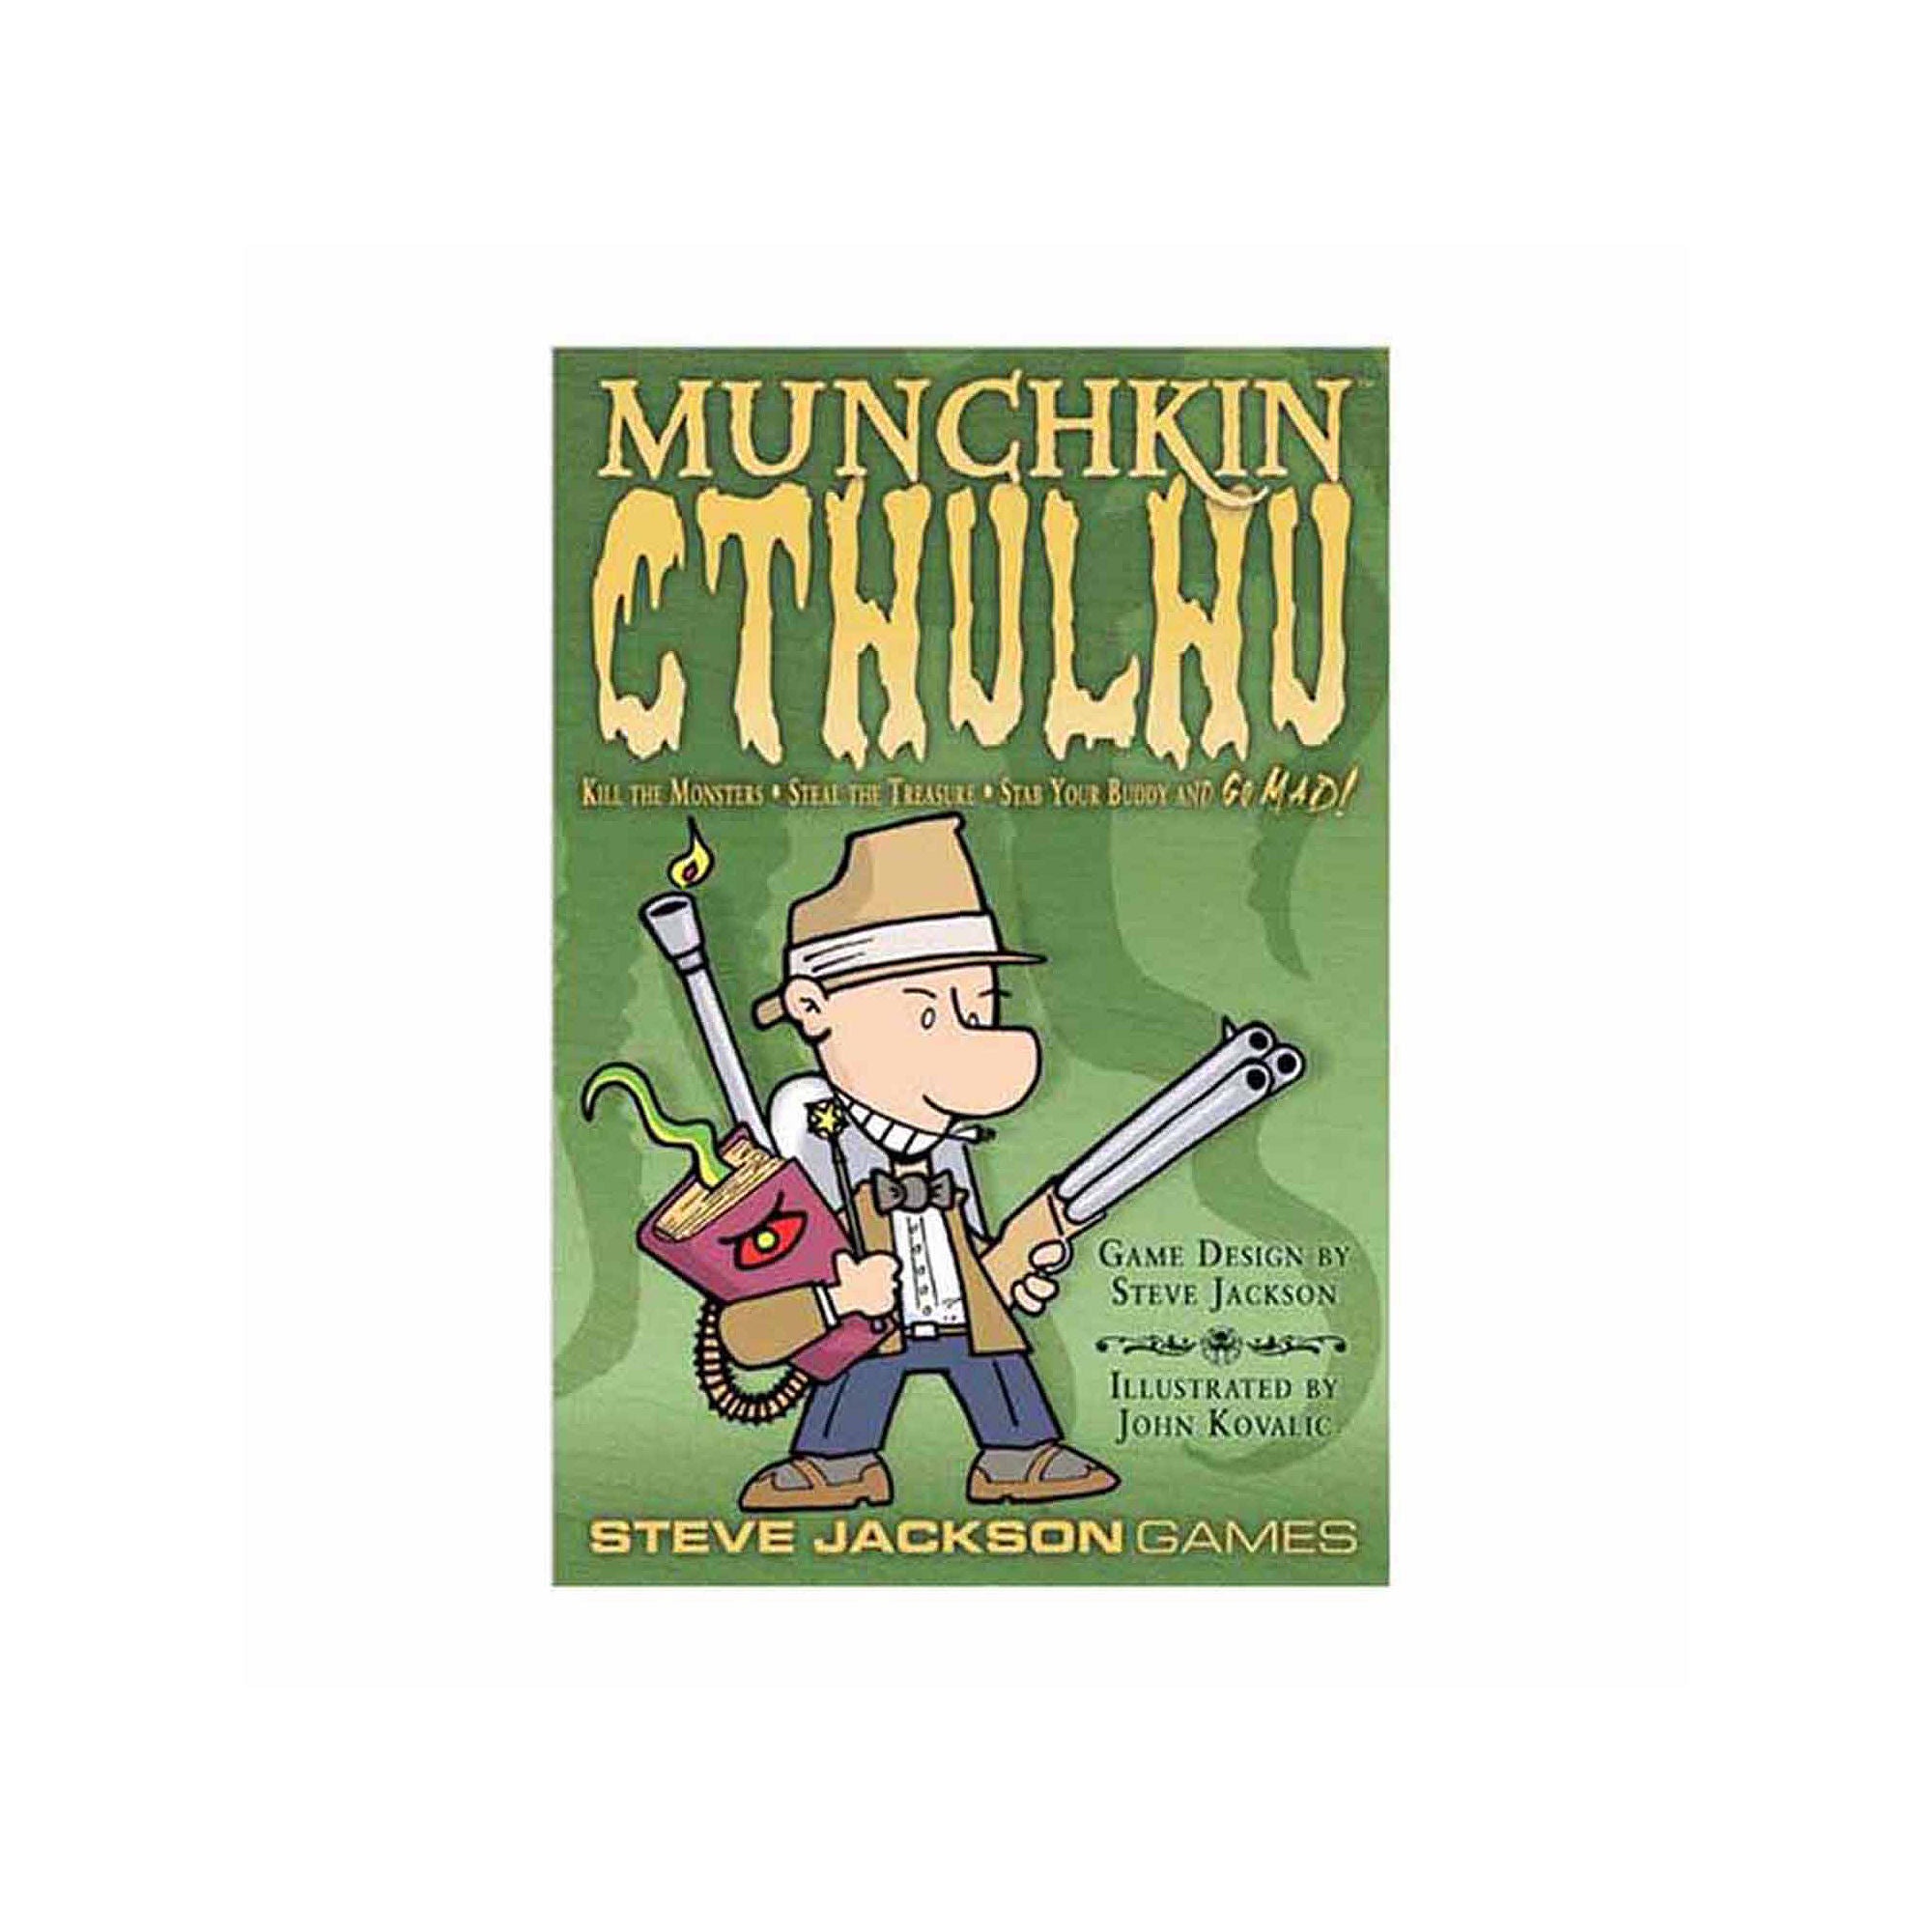 Munchkin Cthulhu | Galaxy Games LLC